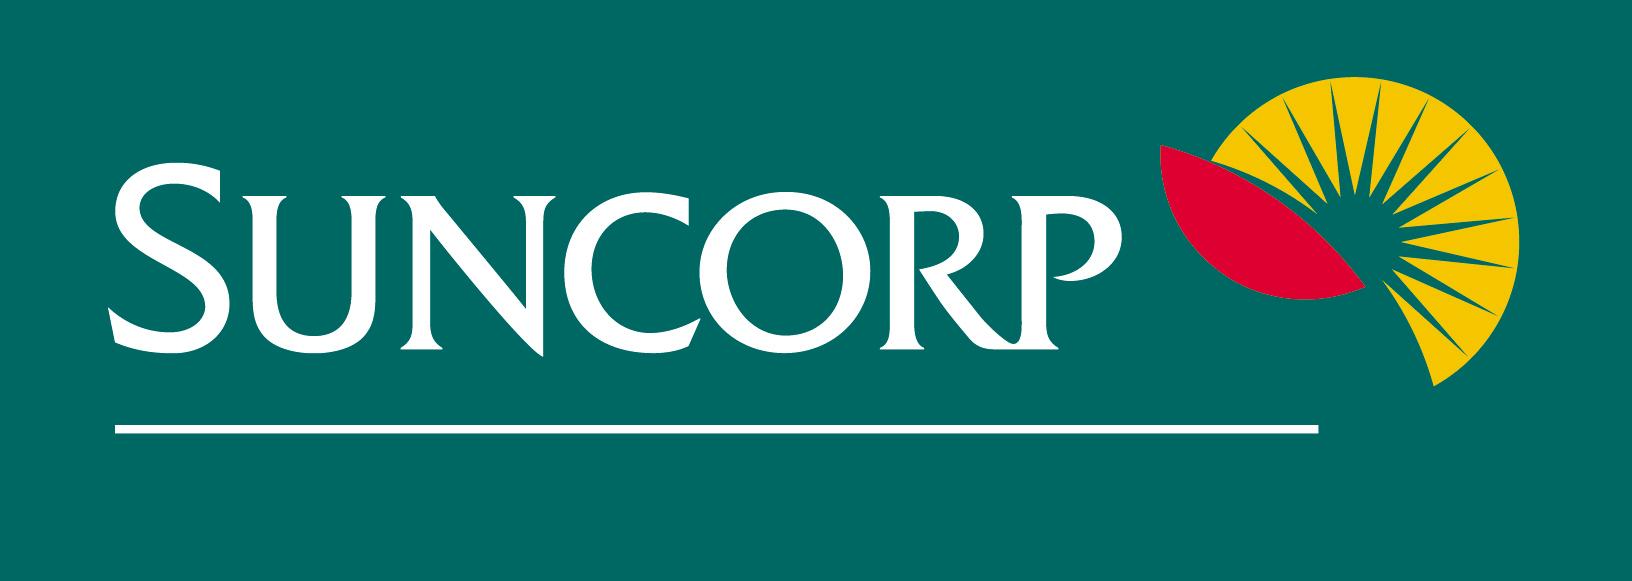 Suncorp Logo - LogoDix